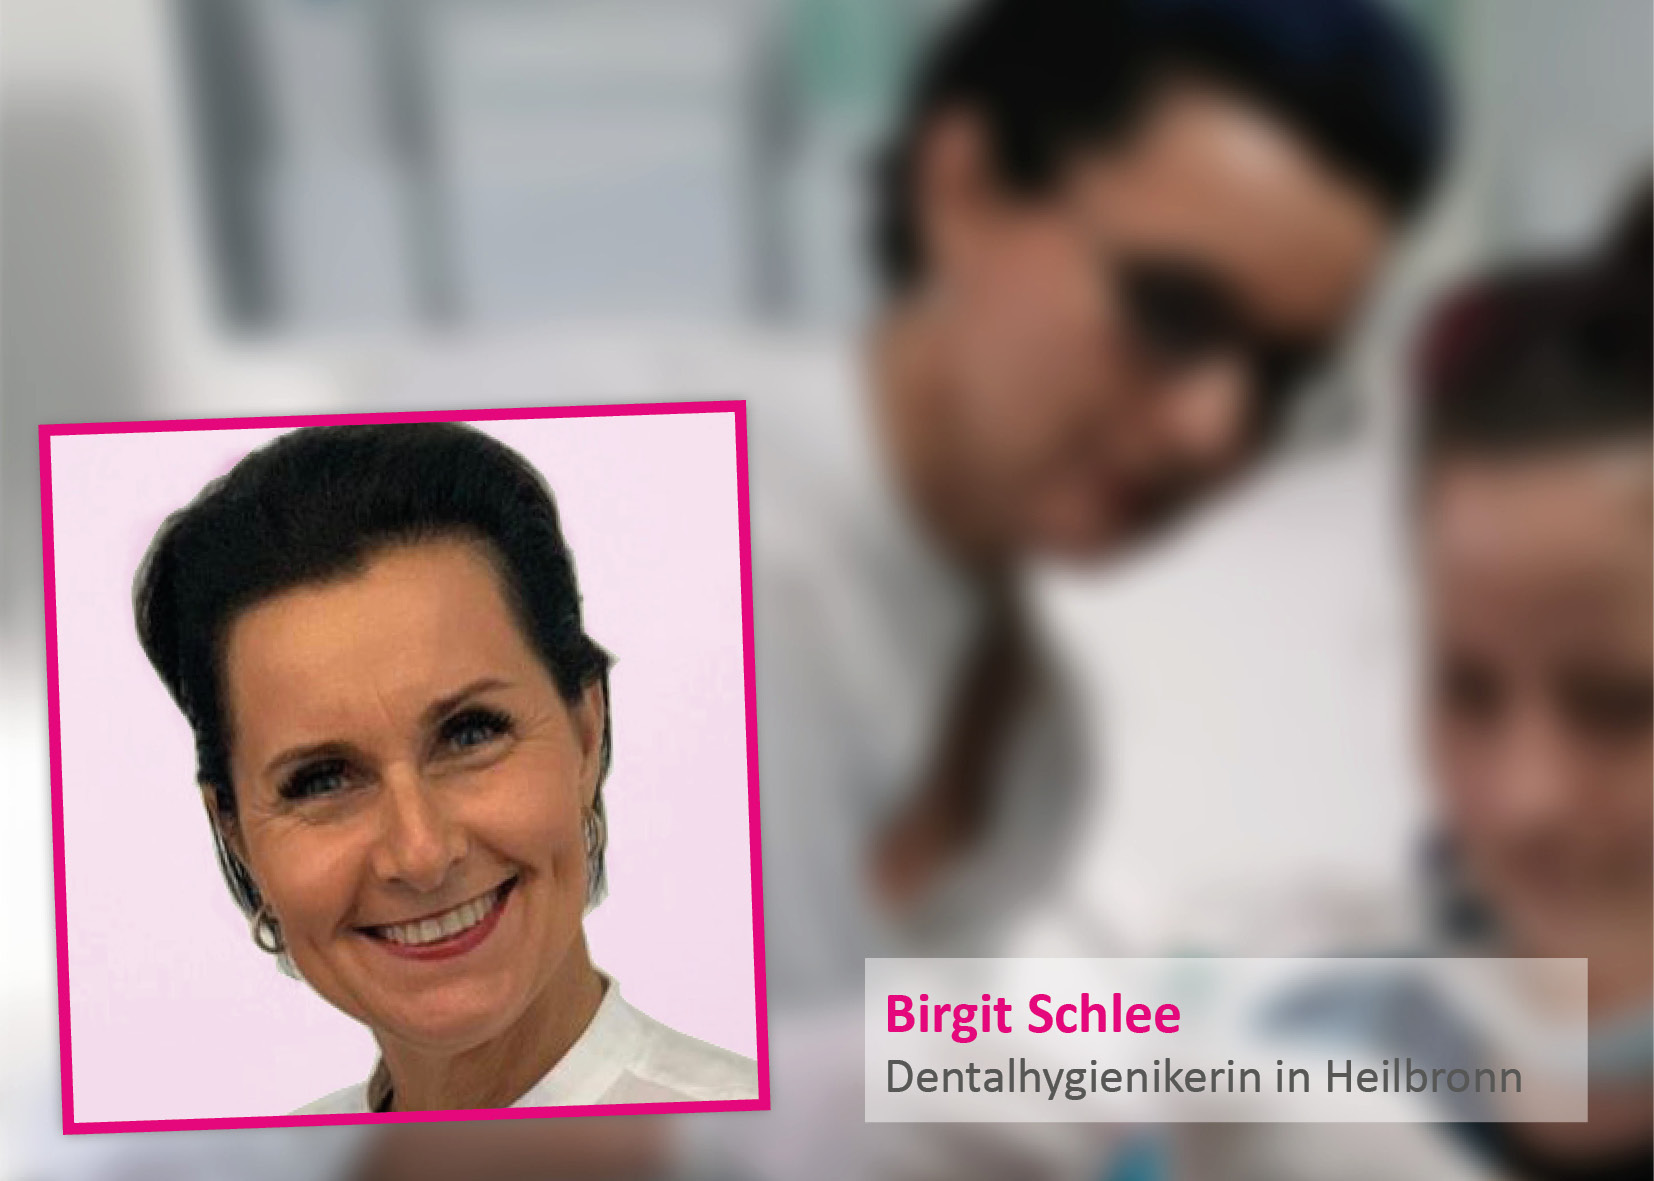 Birgit Schlee, hygiéniste dentaire